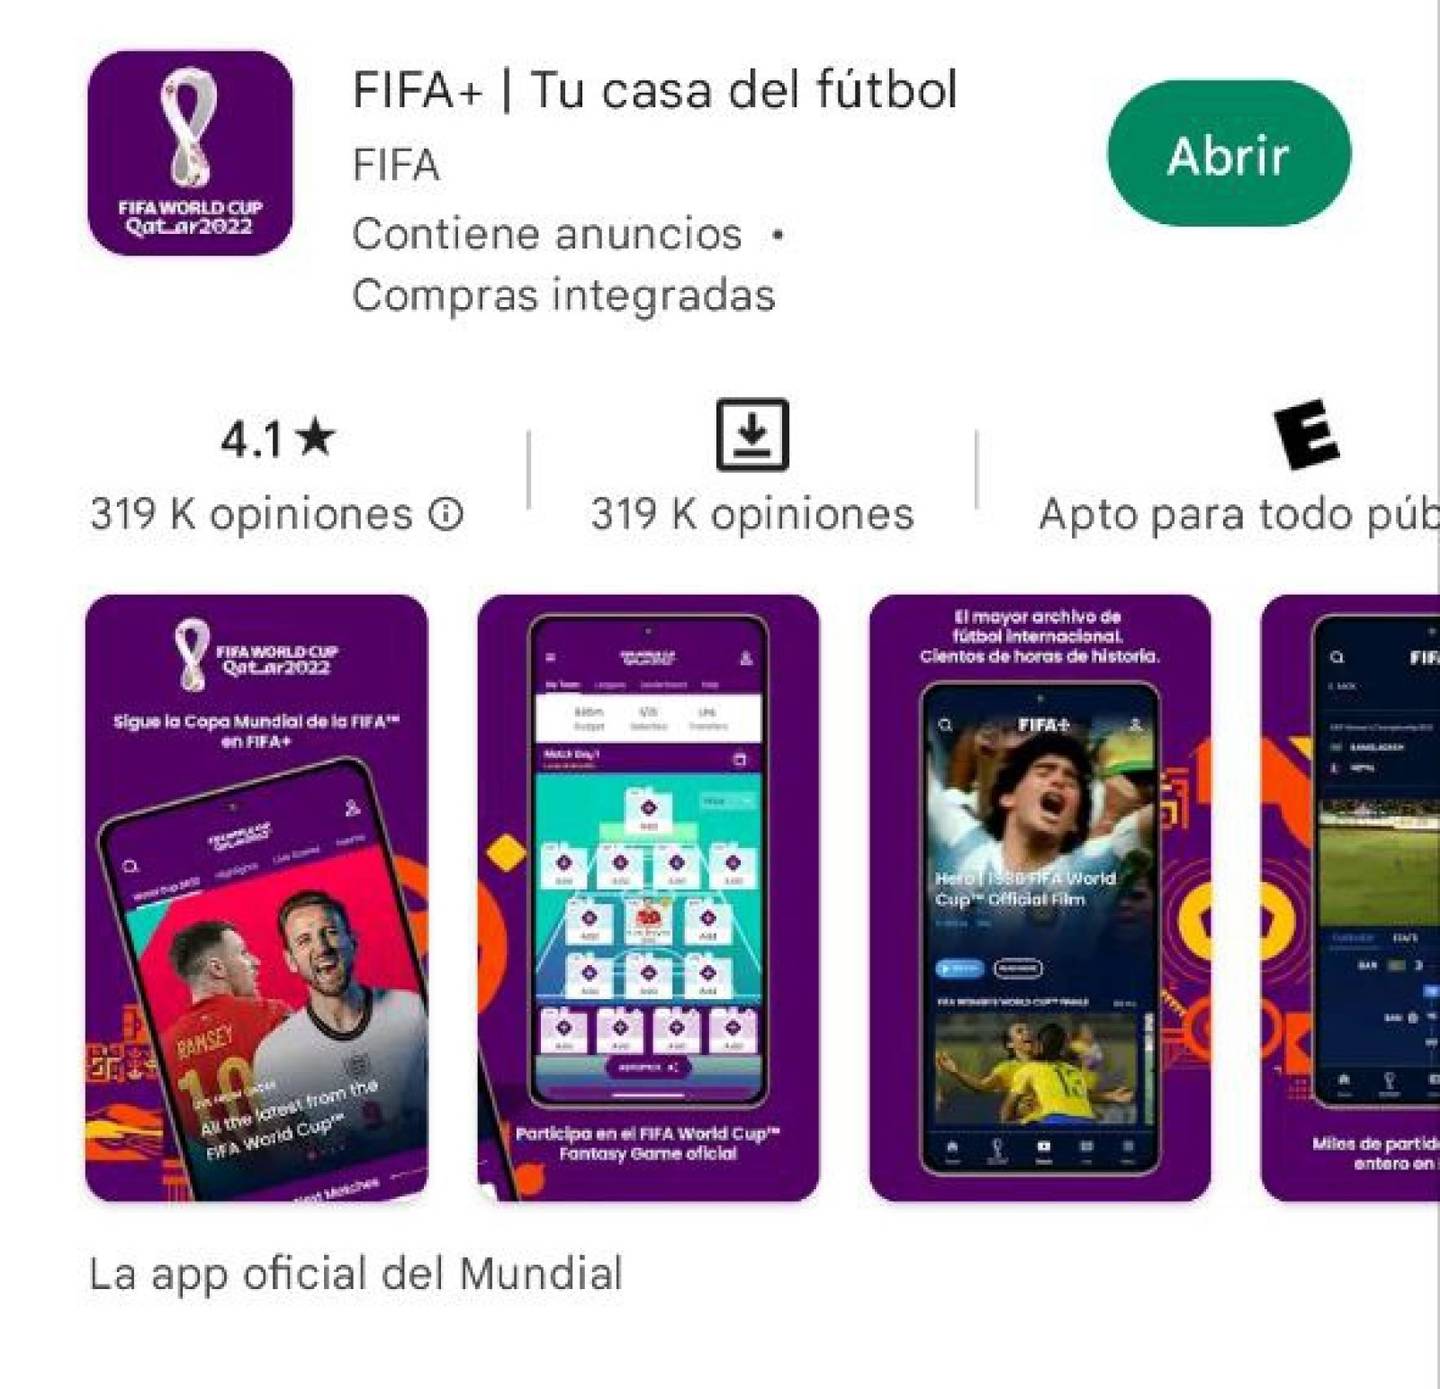 Las apps de Qatar 2022 - FIFA+